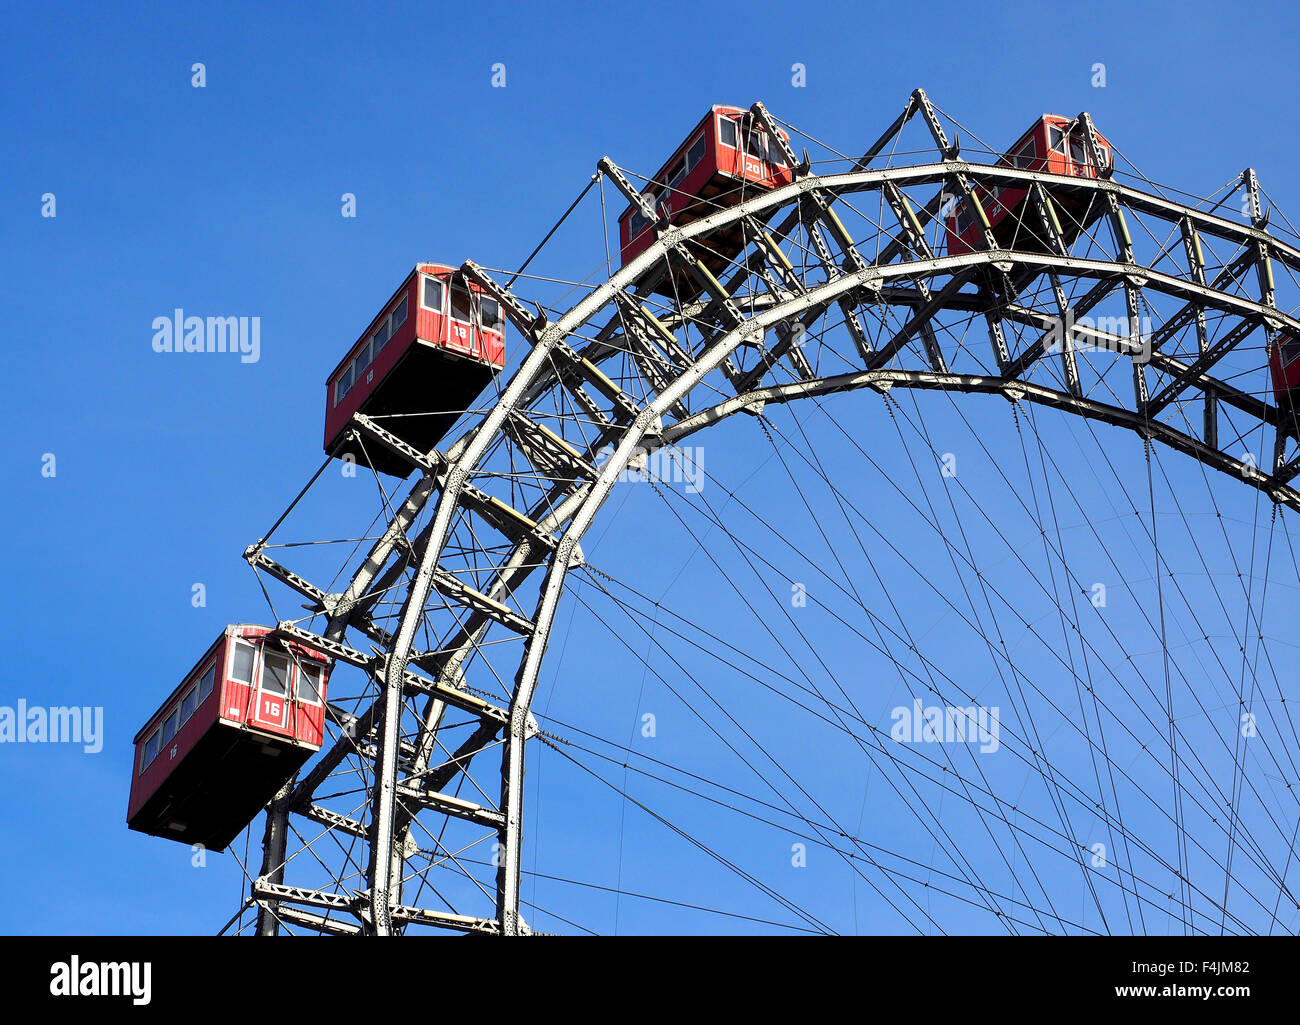 La ruota gigante o 'Wiener Riesenrad' che presenti nel film Il terzo uomo a parco Prater di Vienna in Austria. Foto Stock